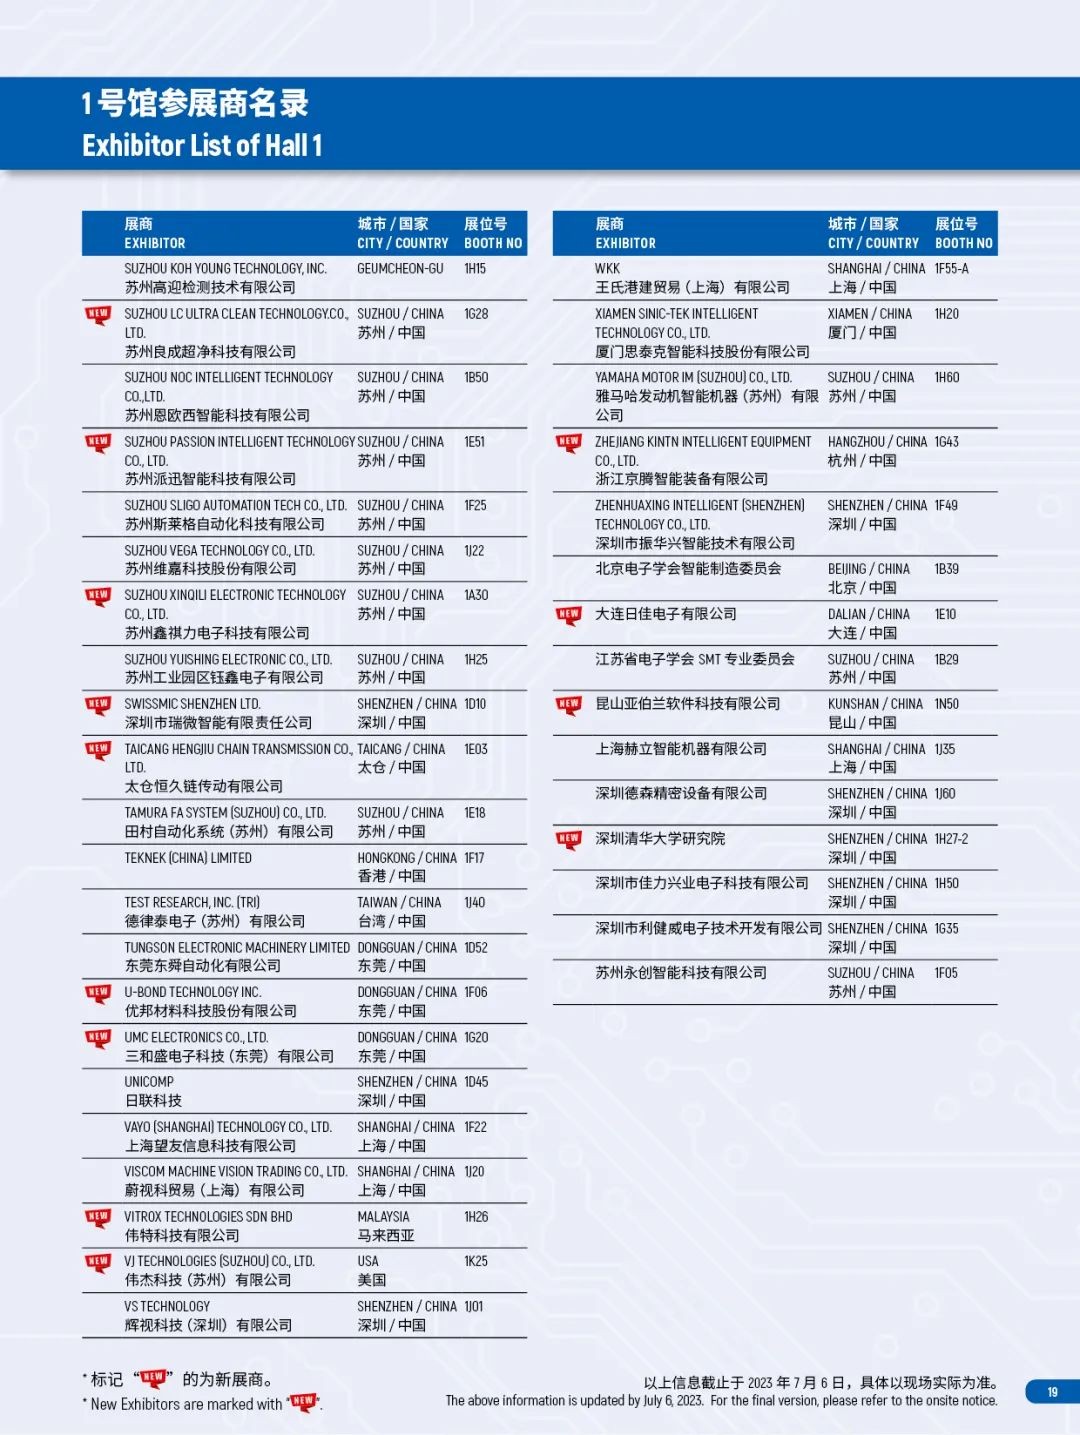 想见的都来了！NEPCON China上海电子展展商列表公布！快快预登记!